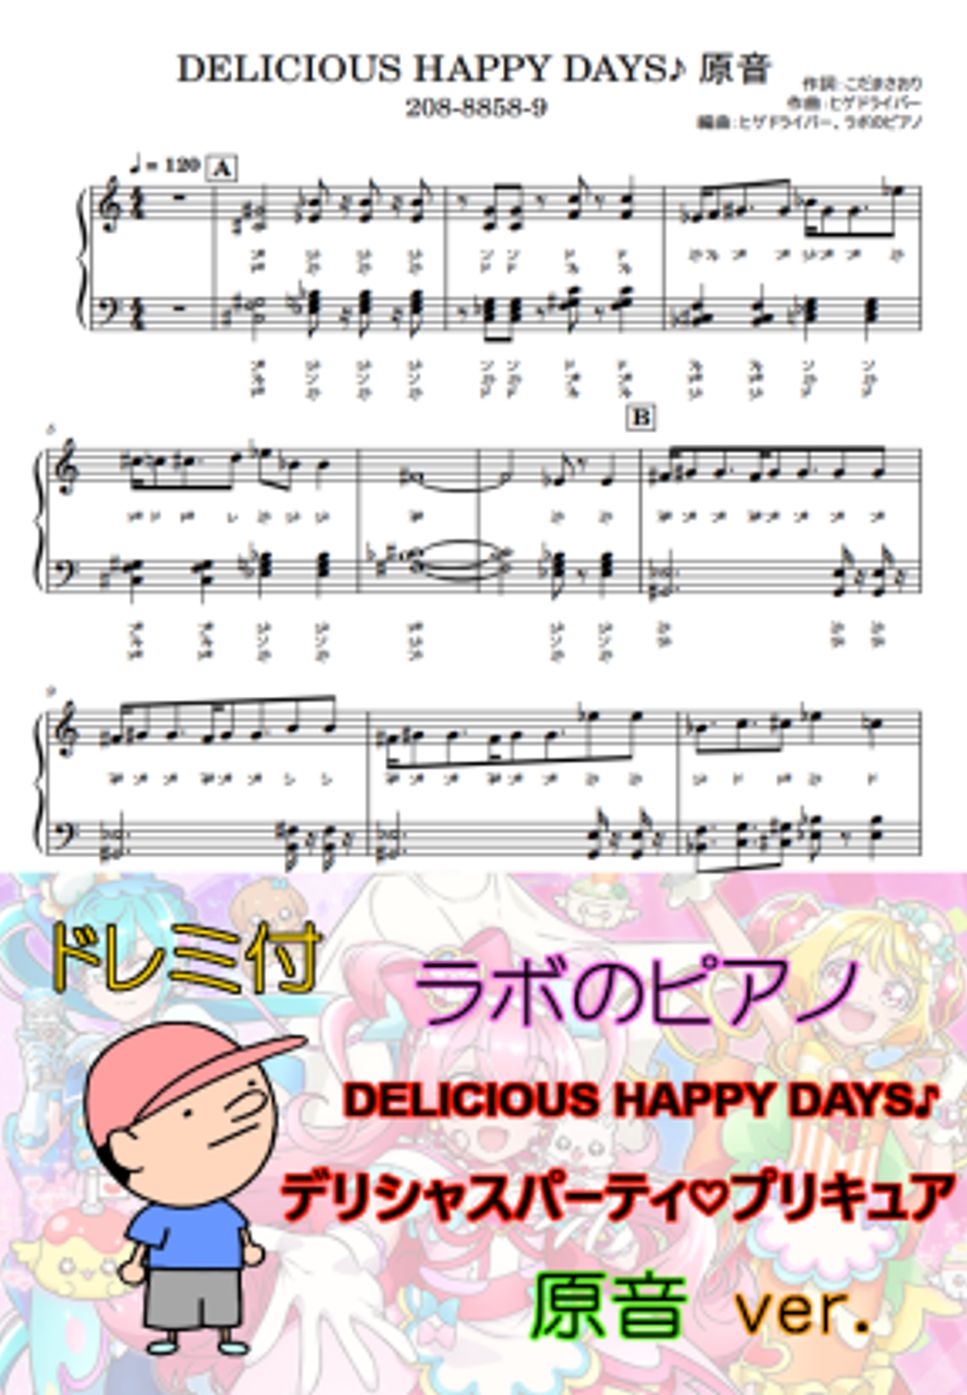 吉武千颯 - DELICIOUS HAPPY DAYS♪ デリシャスパーティ♡プリキュアED ドレミ付 原音ver. by ラボのピアノ